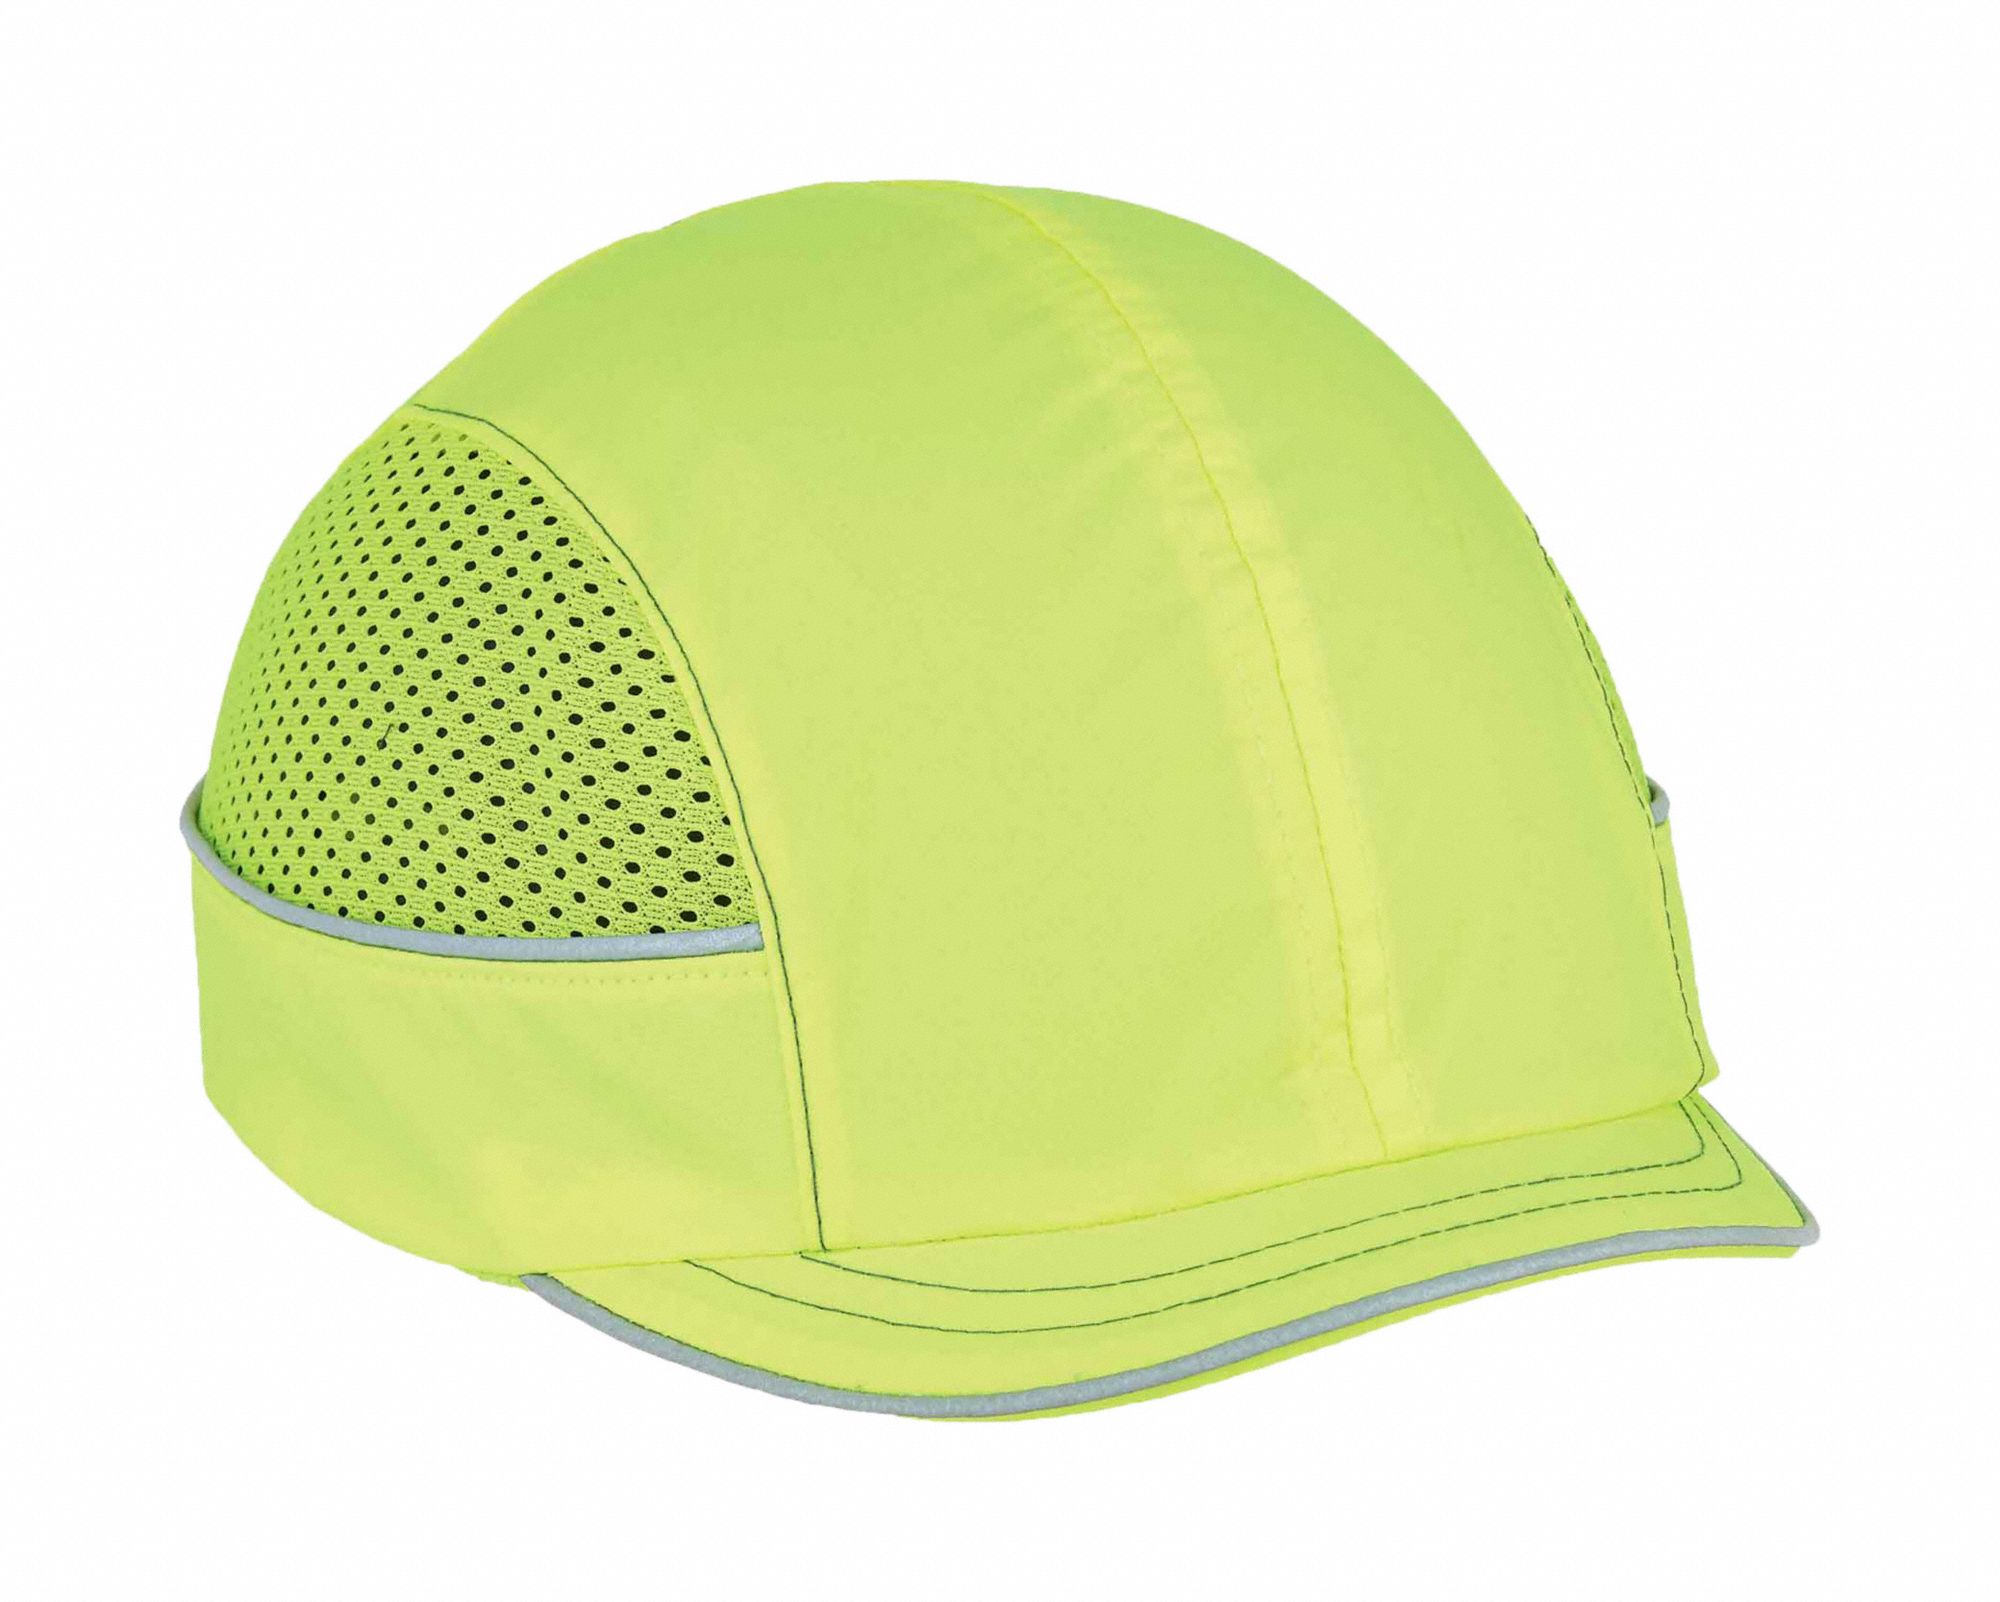 Bump Cap: Short Brim Baseball Head Protection, Hi-Visibility Green, Hook-and-Loop, ABS